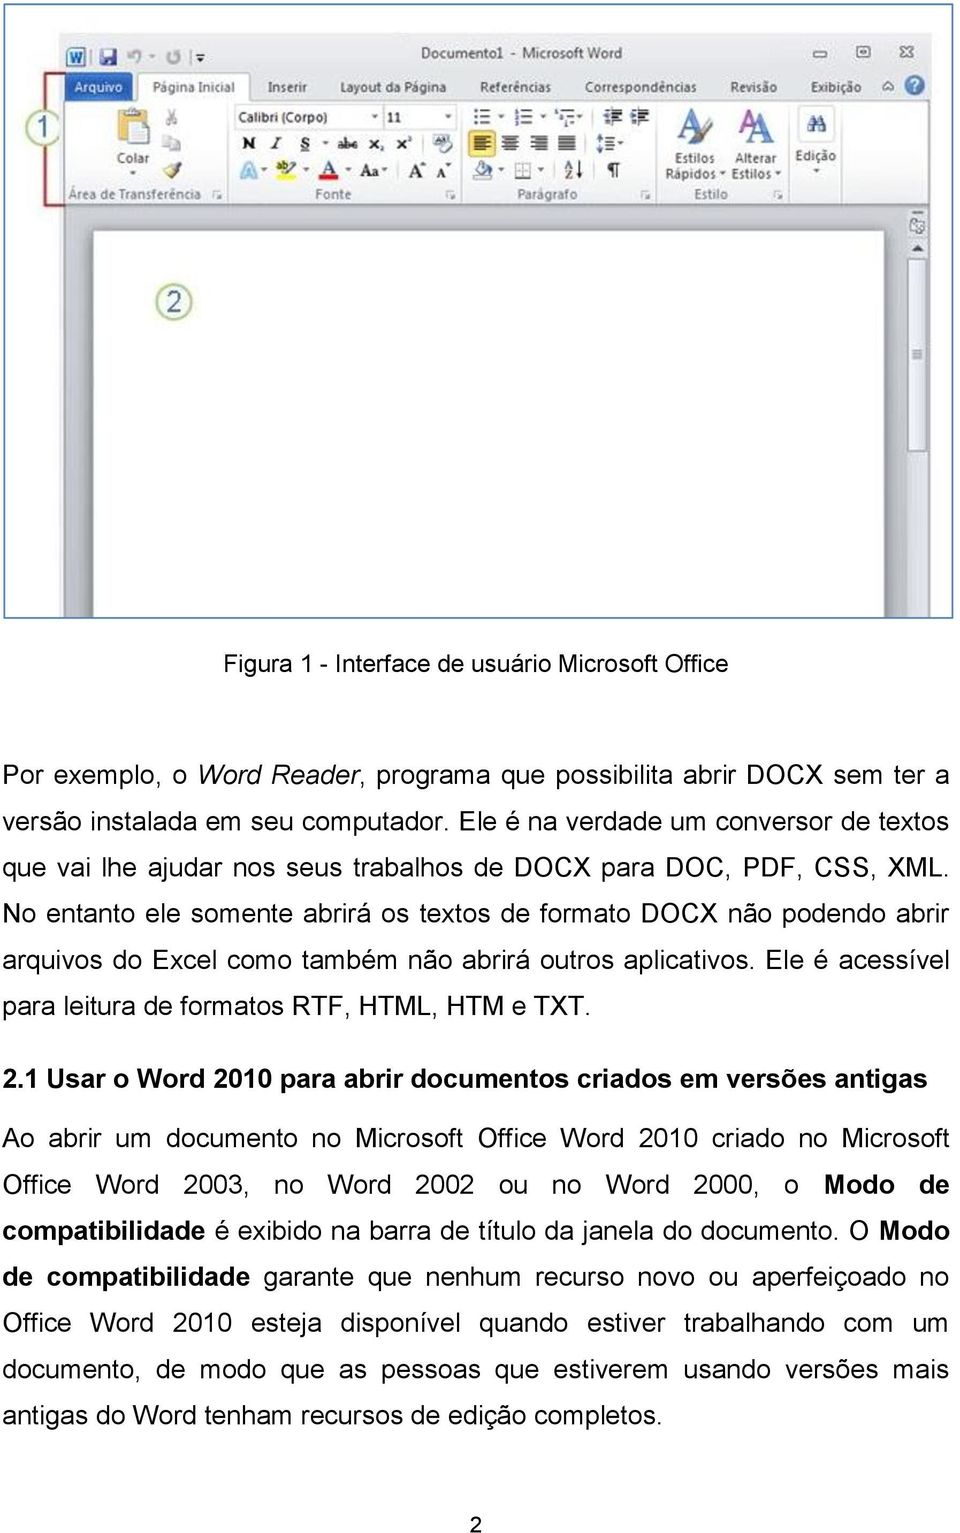 No entanto ele somente abrirá os textos de formato DOCX não podendo abrir arquivos do Excel como também não abrirá outros aplicativos. Ele é acessível para leitura de formatos RTF, HTML, HTM e TXT. 2.